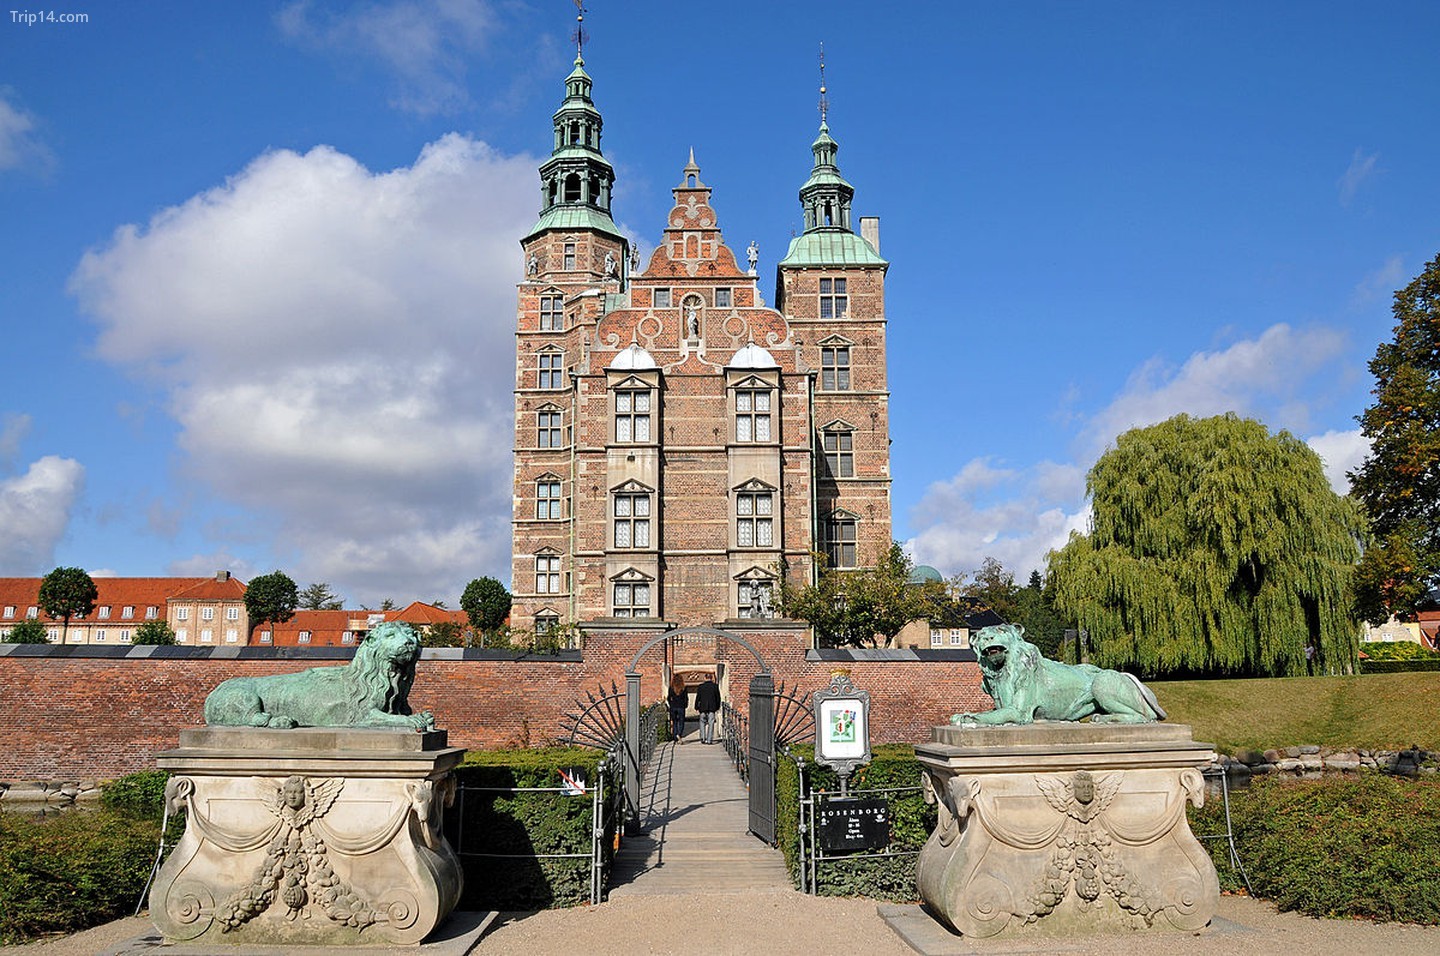  Lâu đài Rosenborg   |   